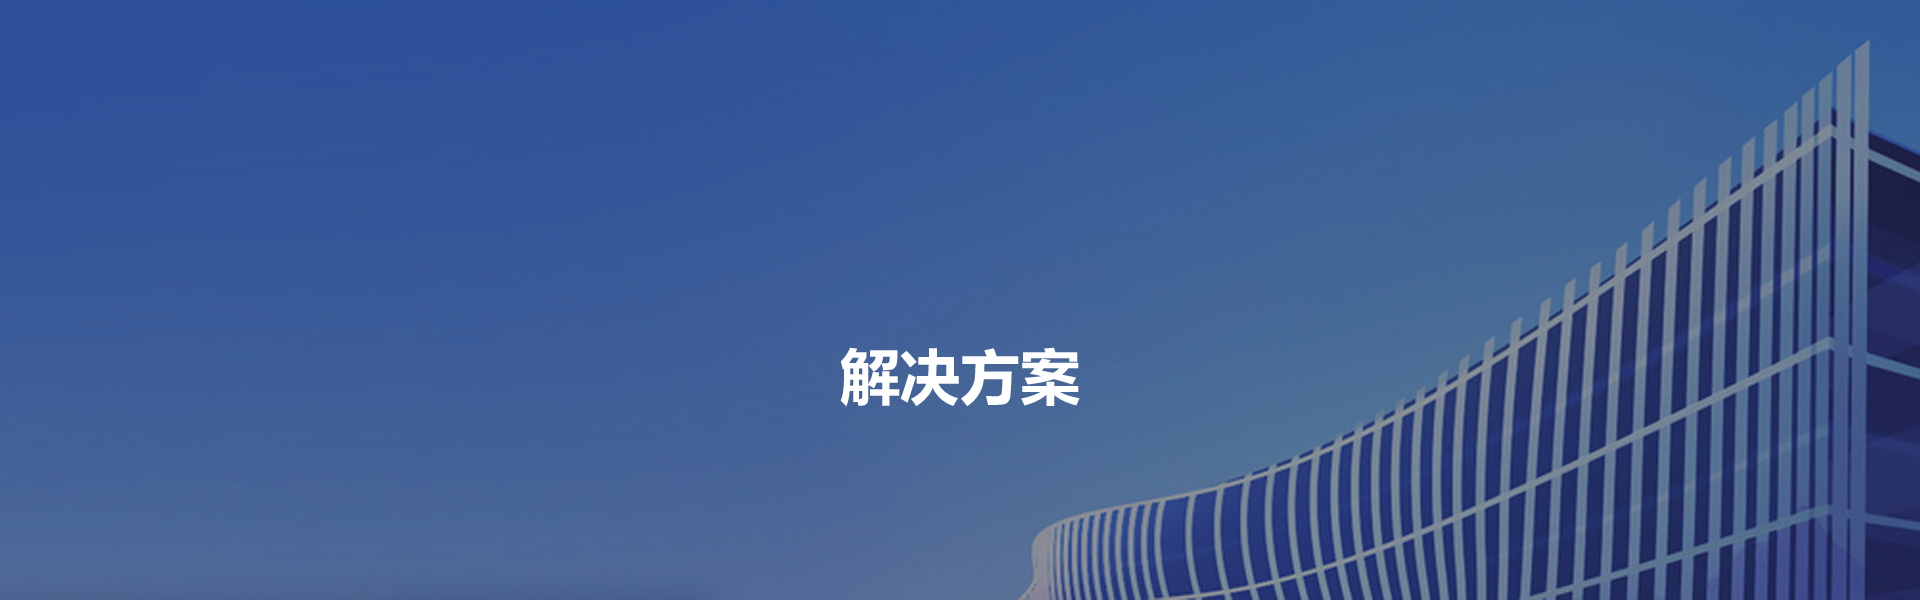 Z6尊龙·凯时(中国)-官方网站_产品1780